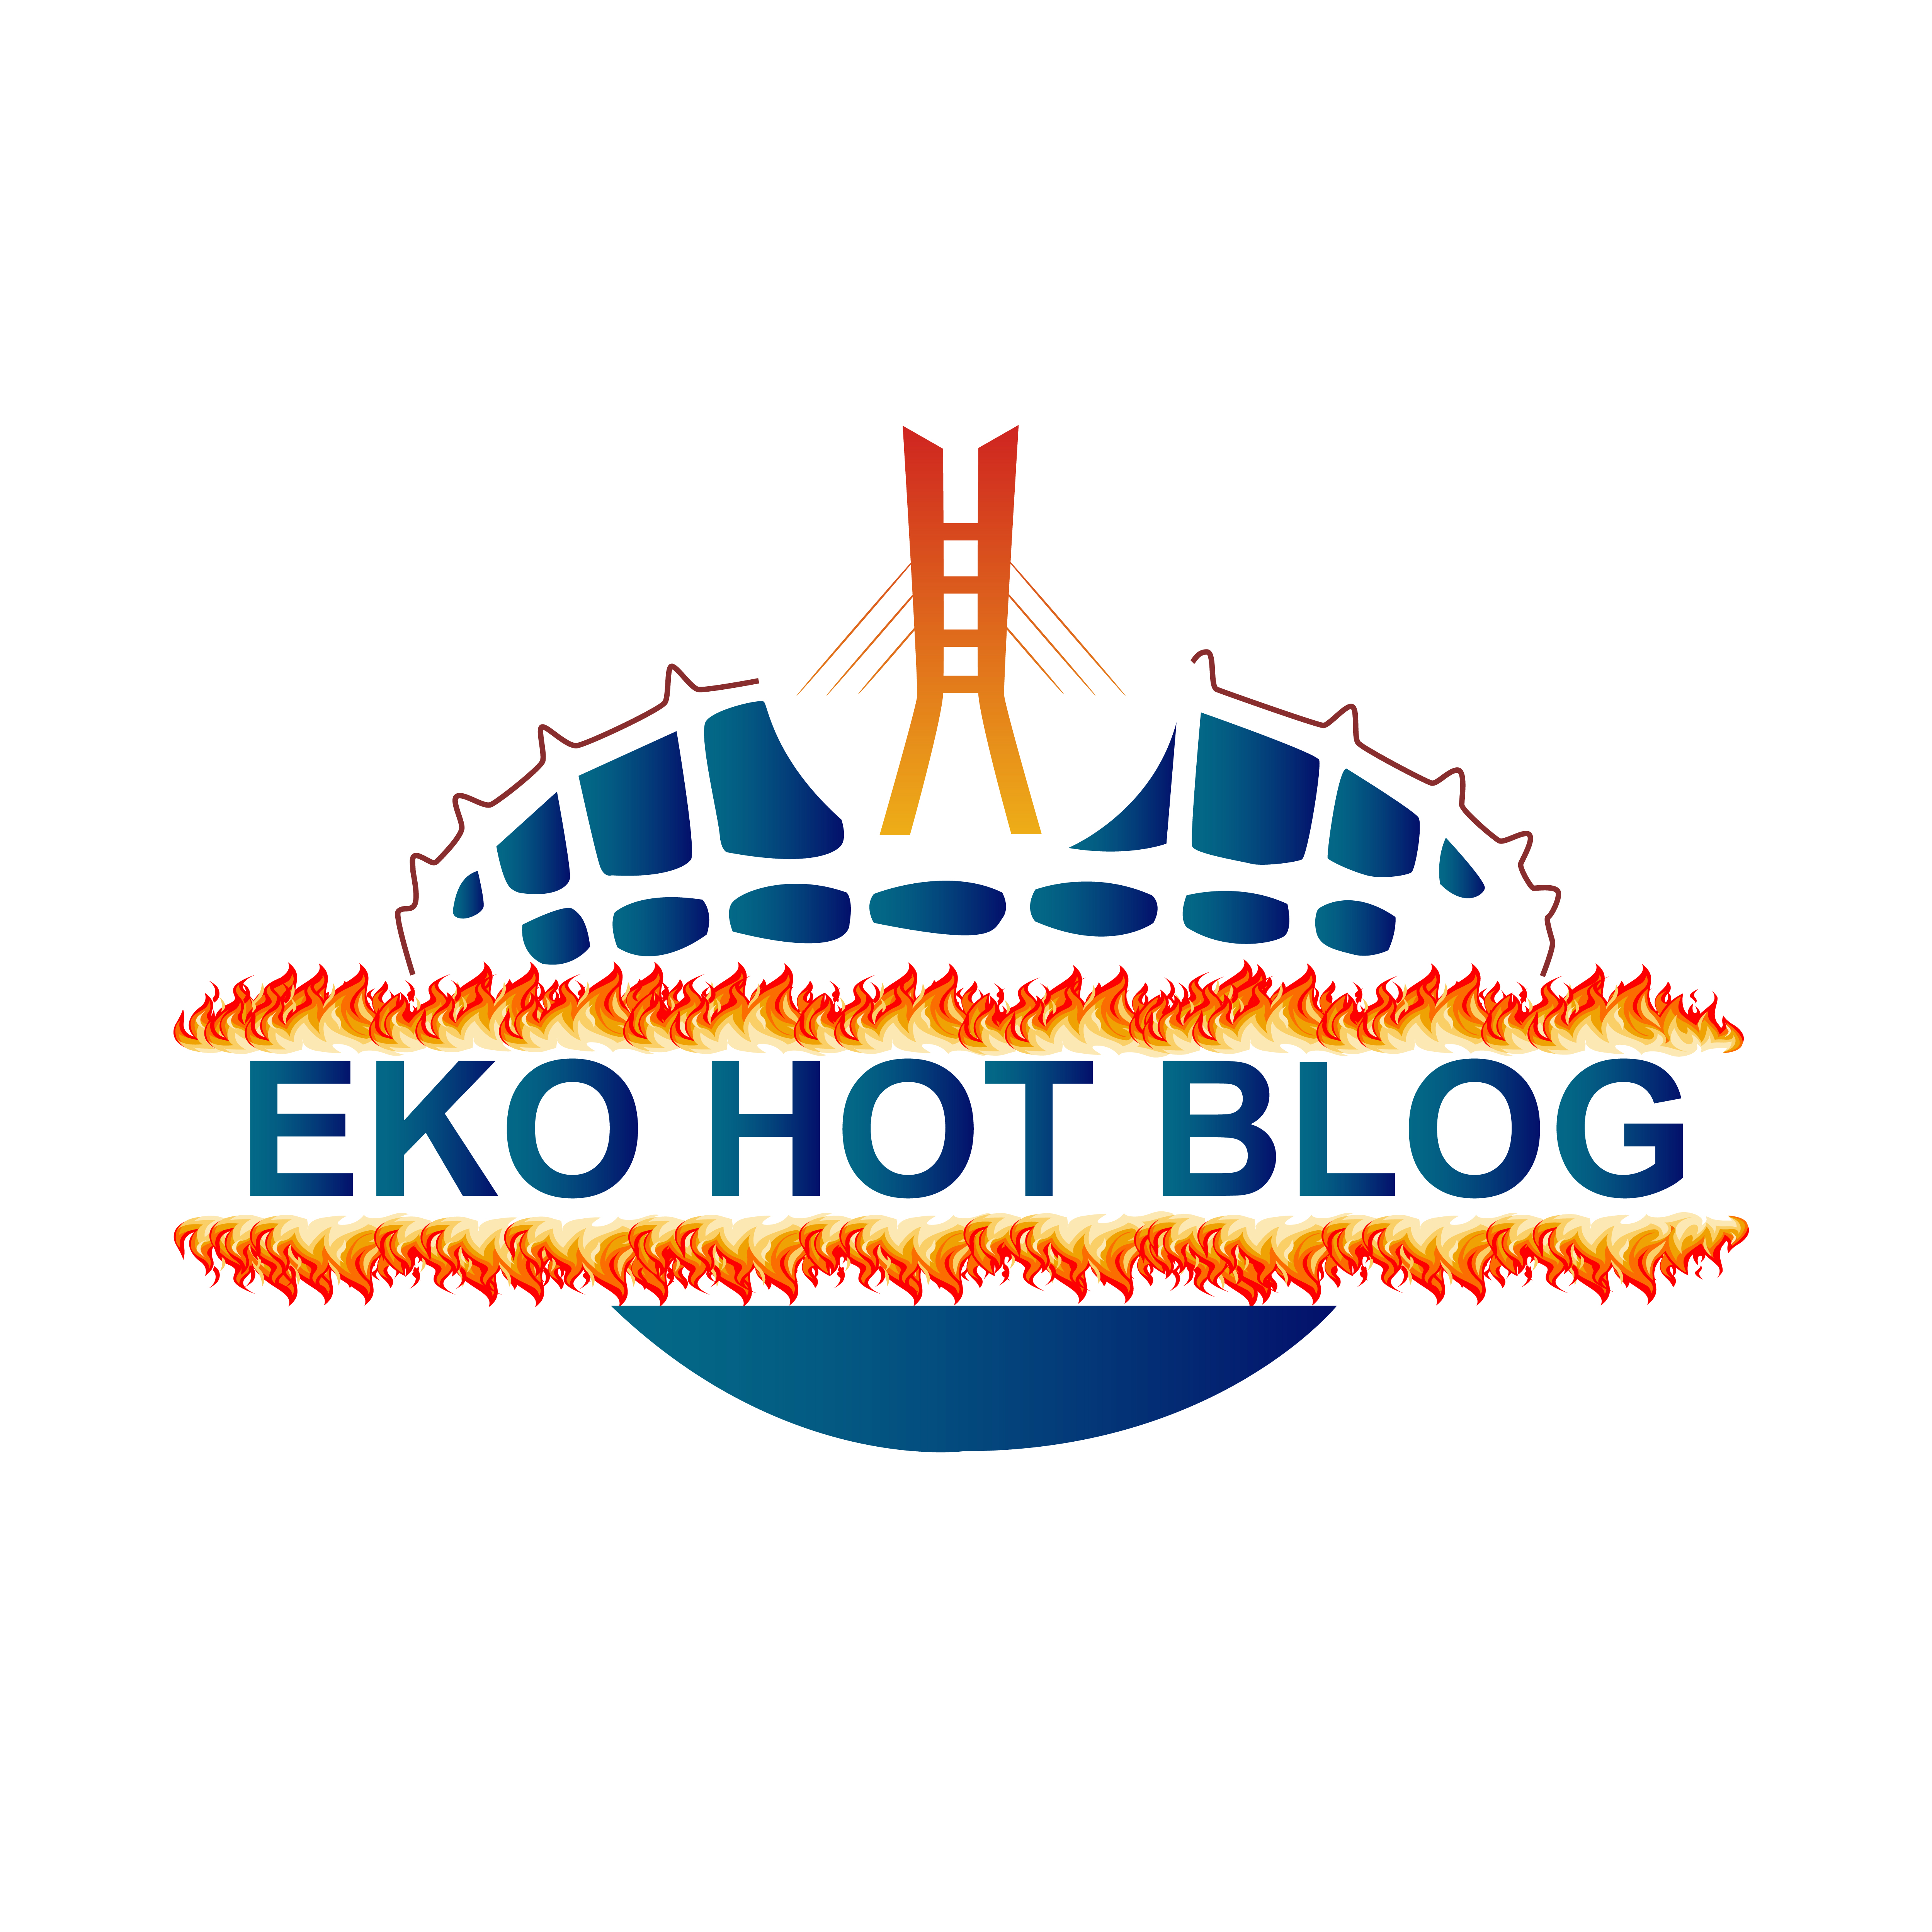 Eko hot Blog-04